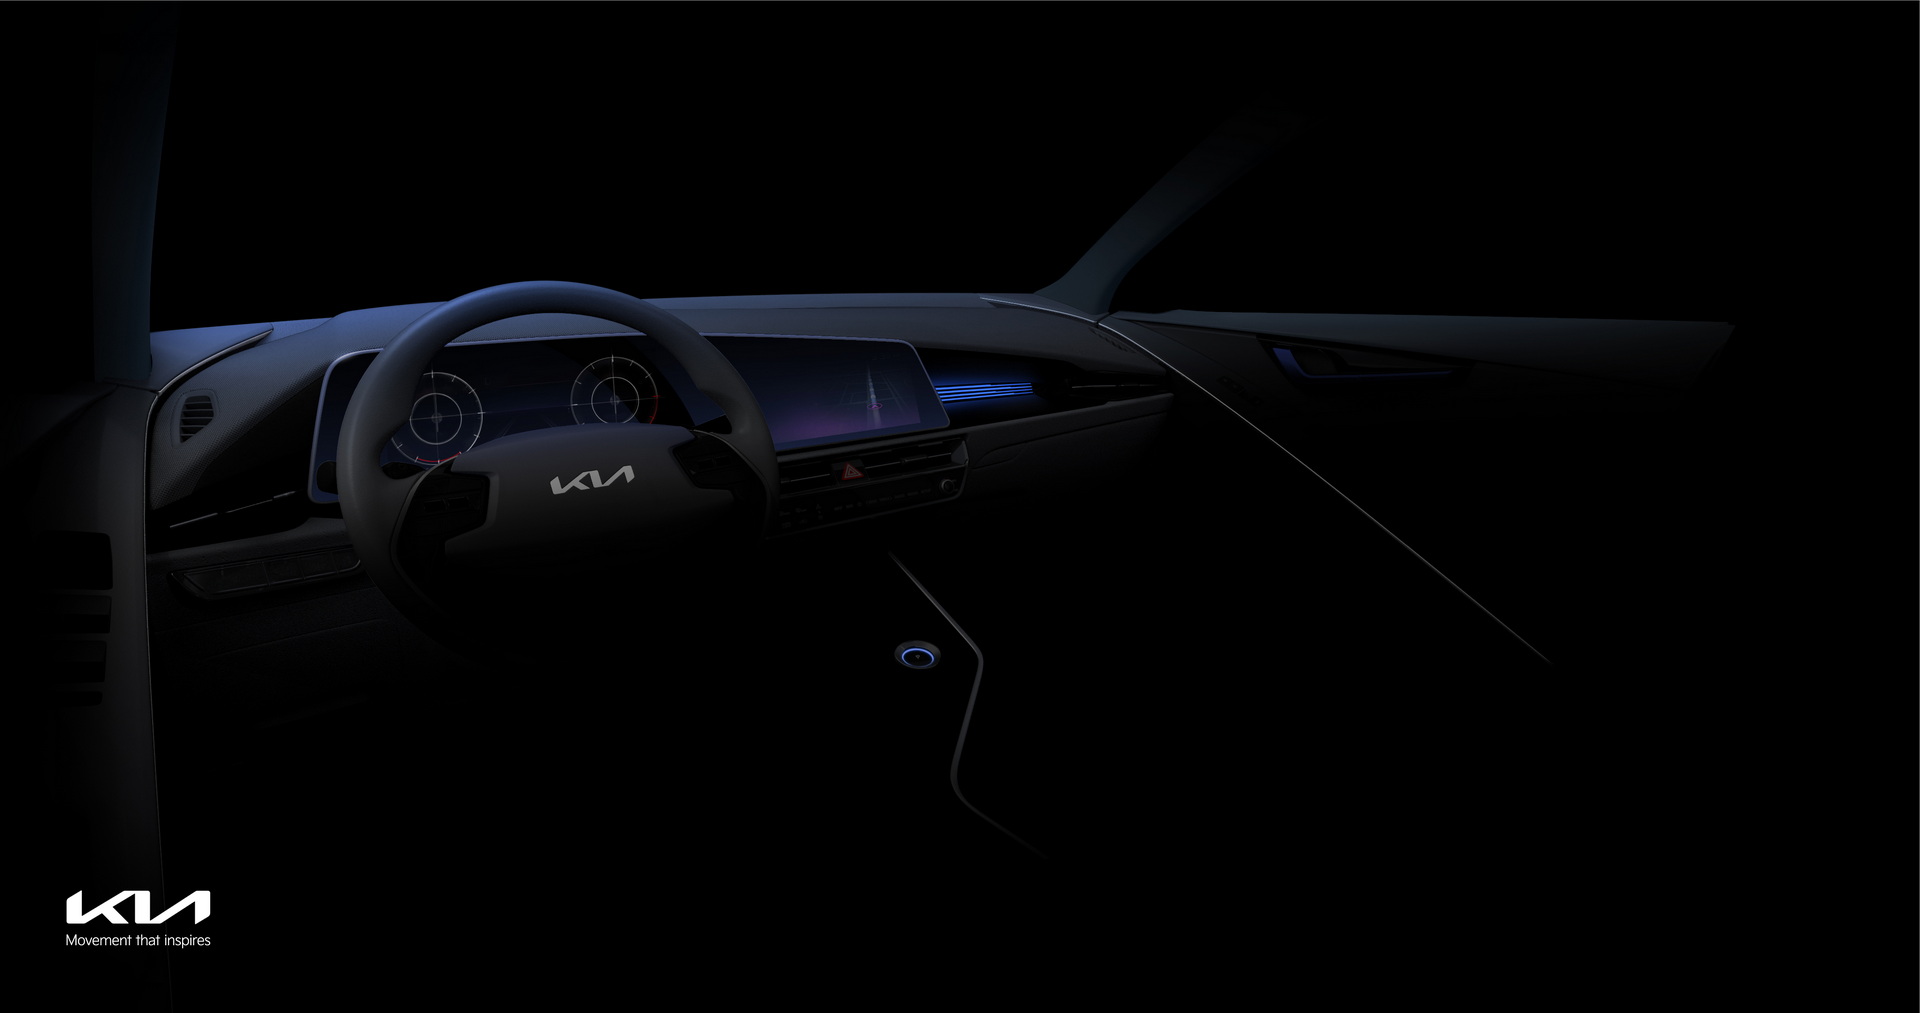 2022 Kia Niro'nun tasarımına ilişkin ipucu görselleri paylaşıldı